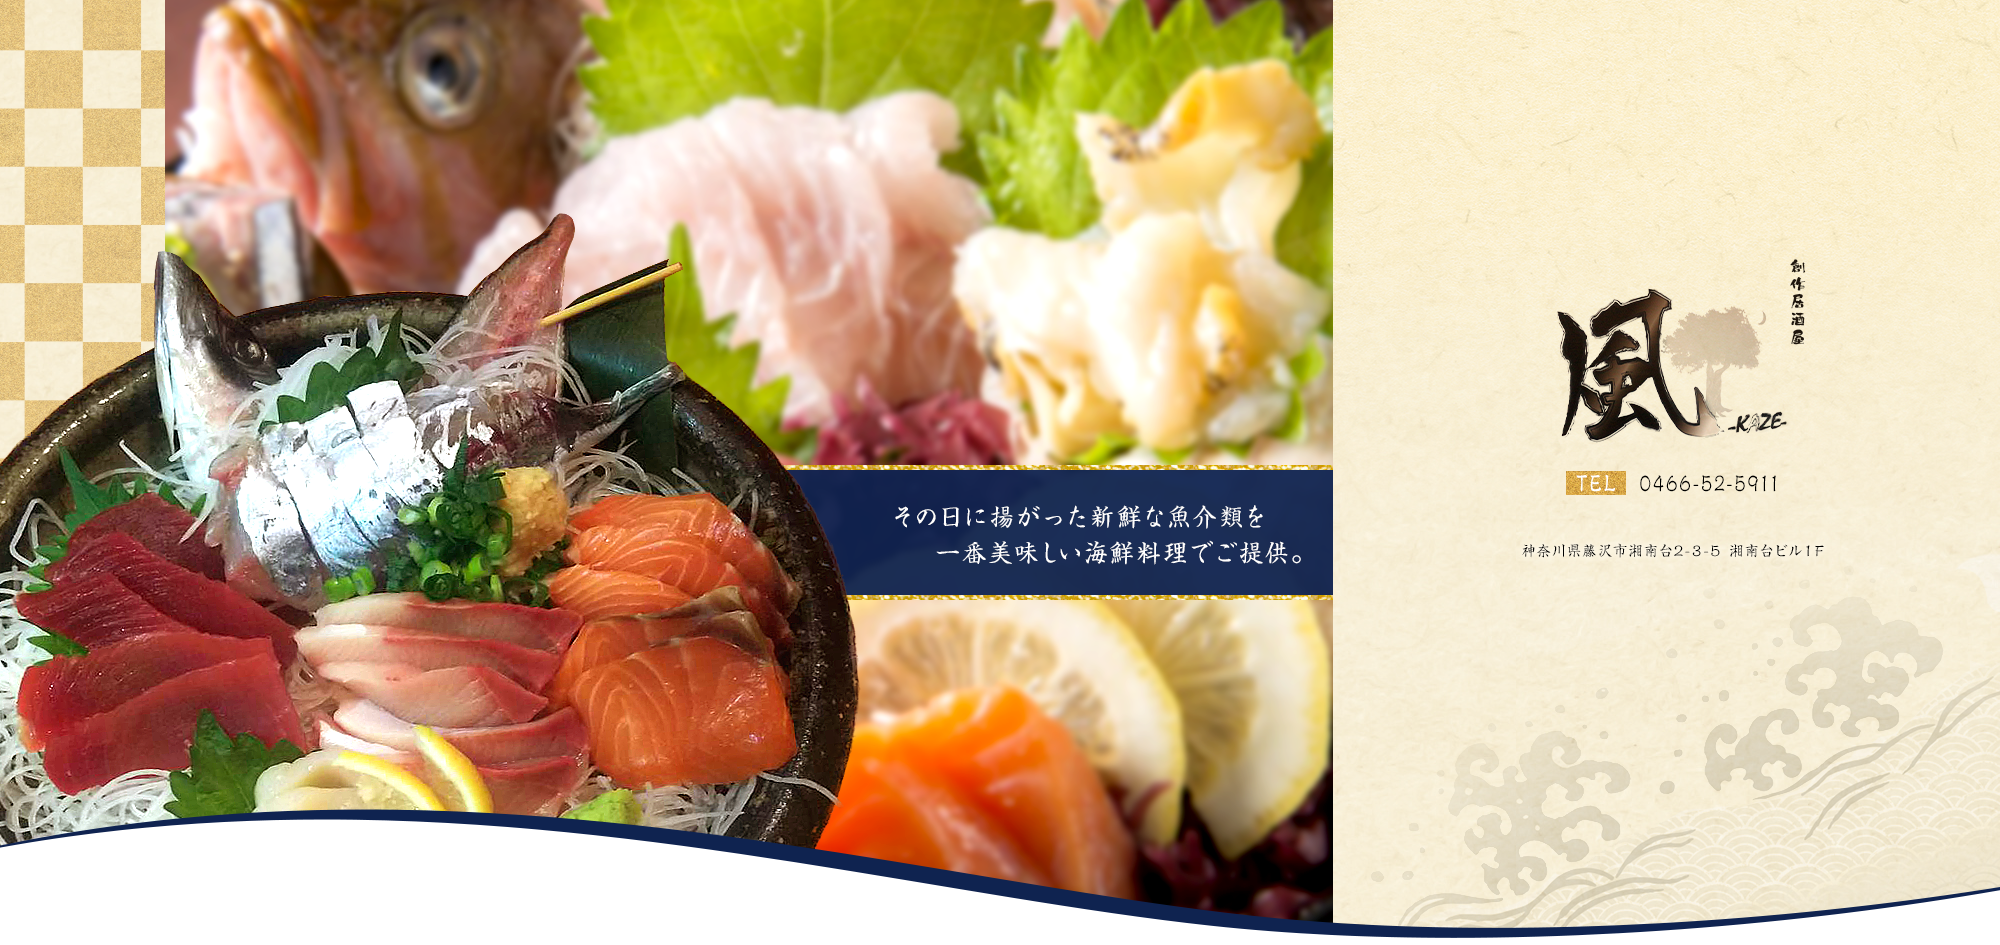 その日に揚がった新鮮な魚介類を 一番美味しい海鮮料理でご提供。